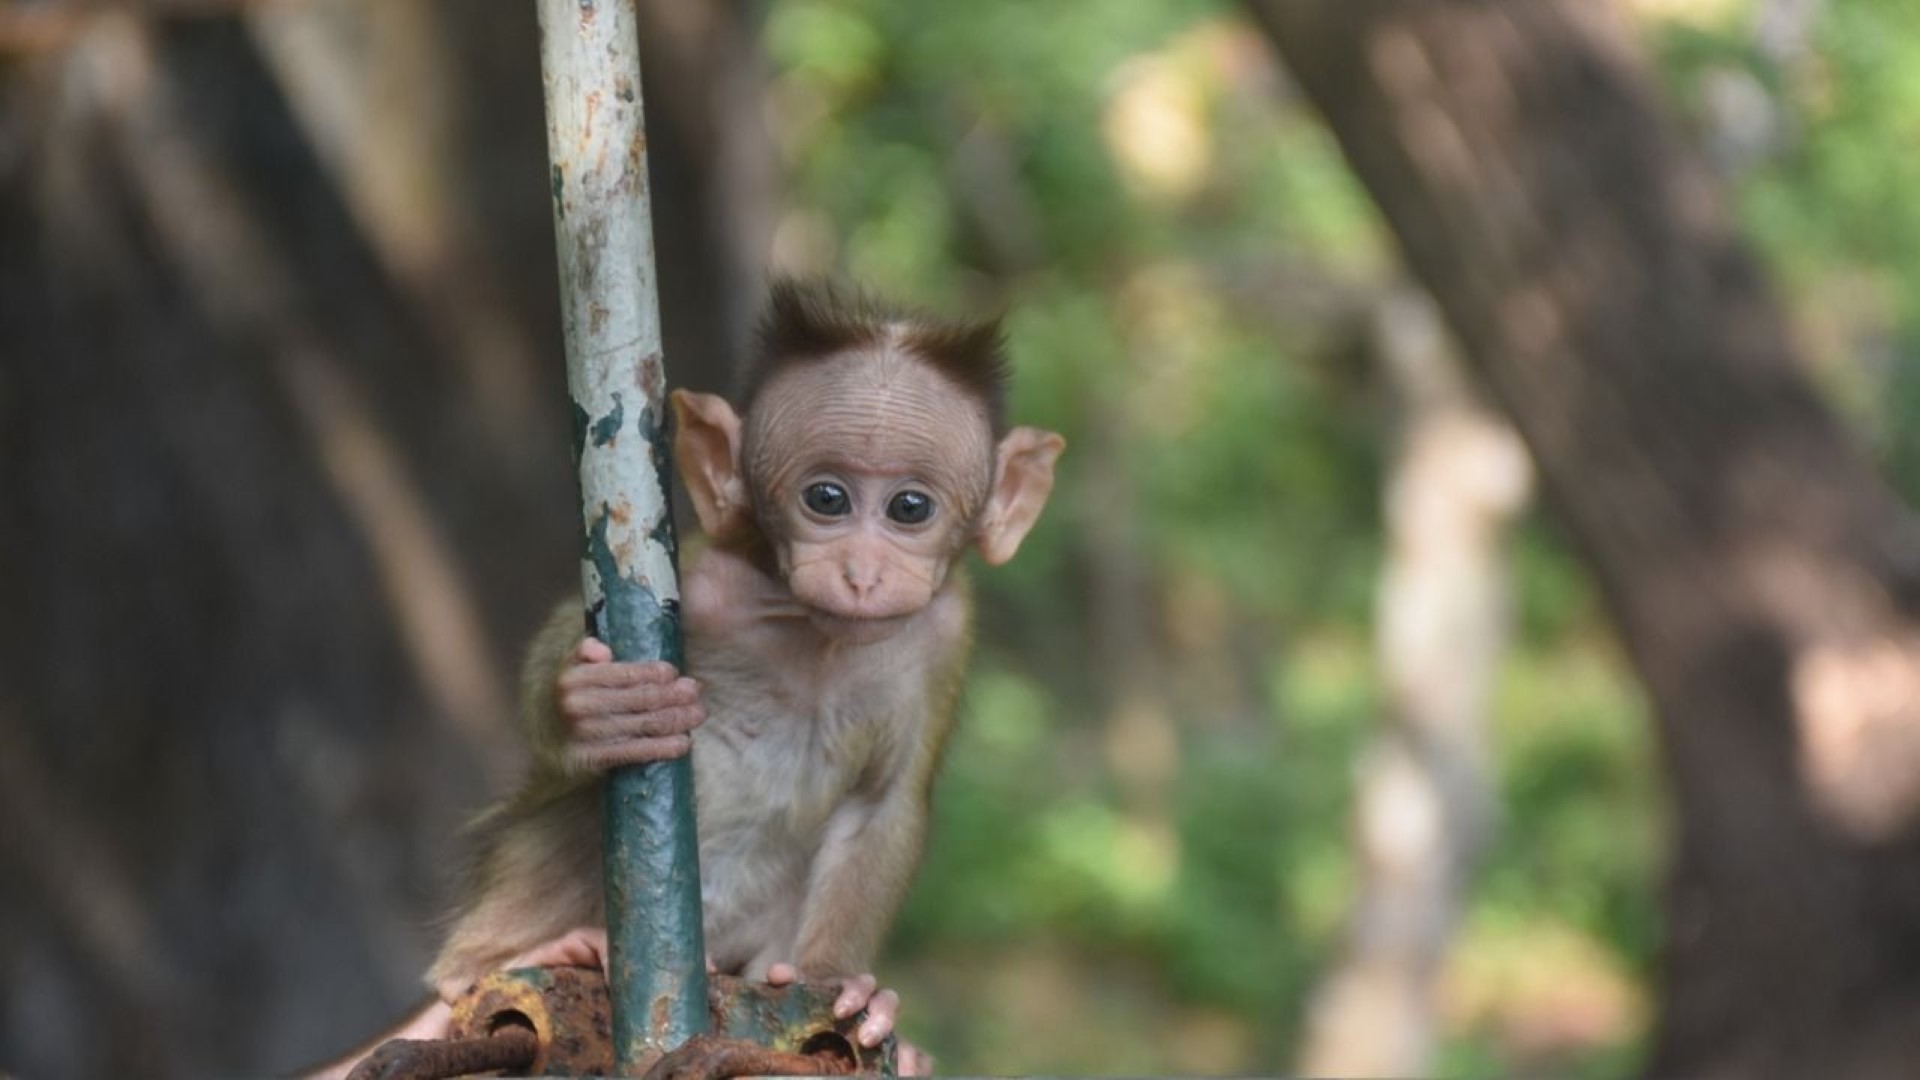 Bonnet macaque infant